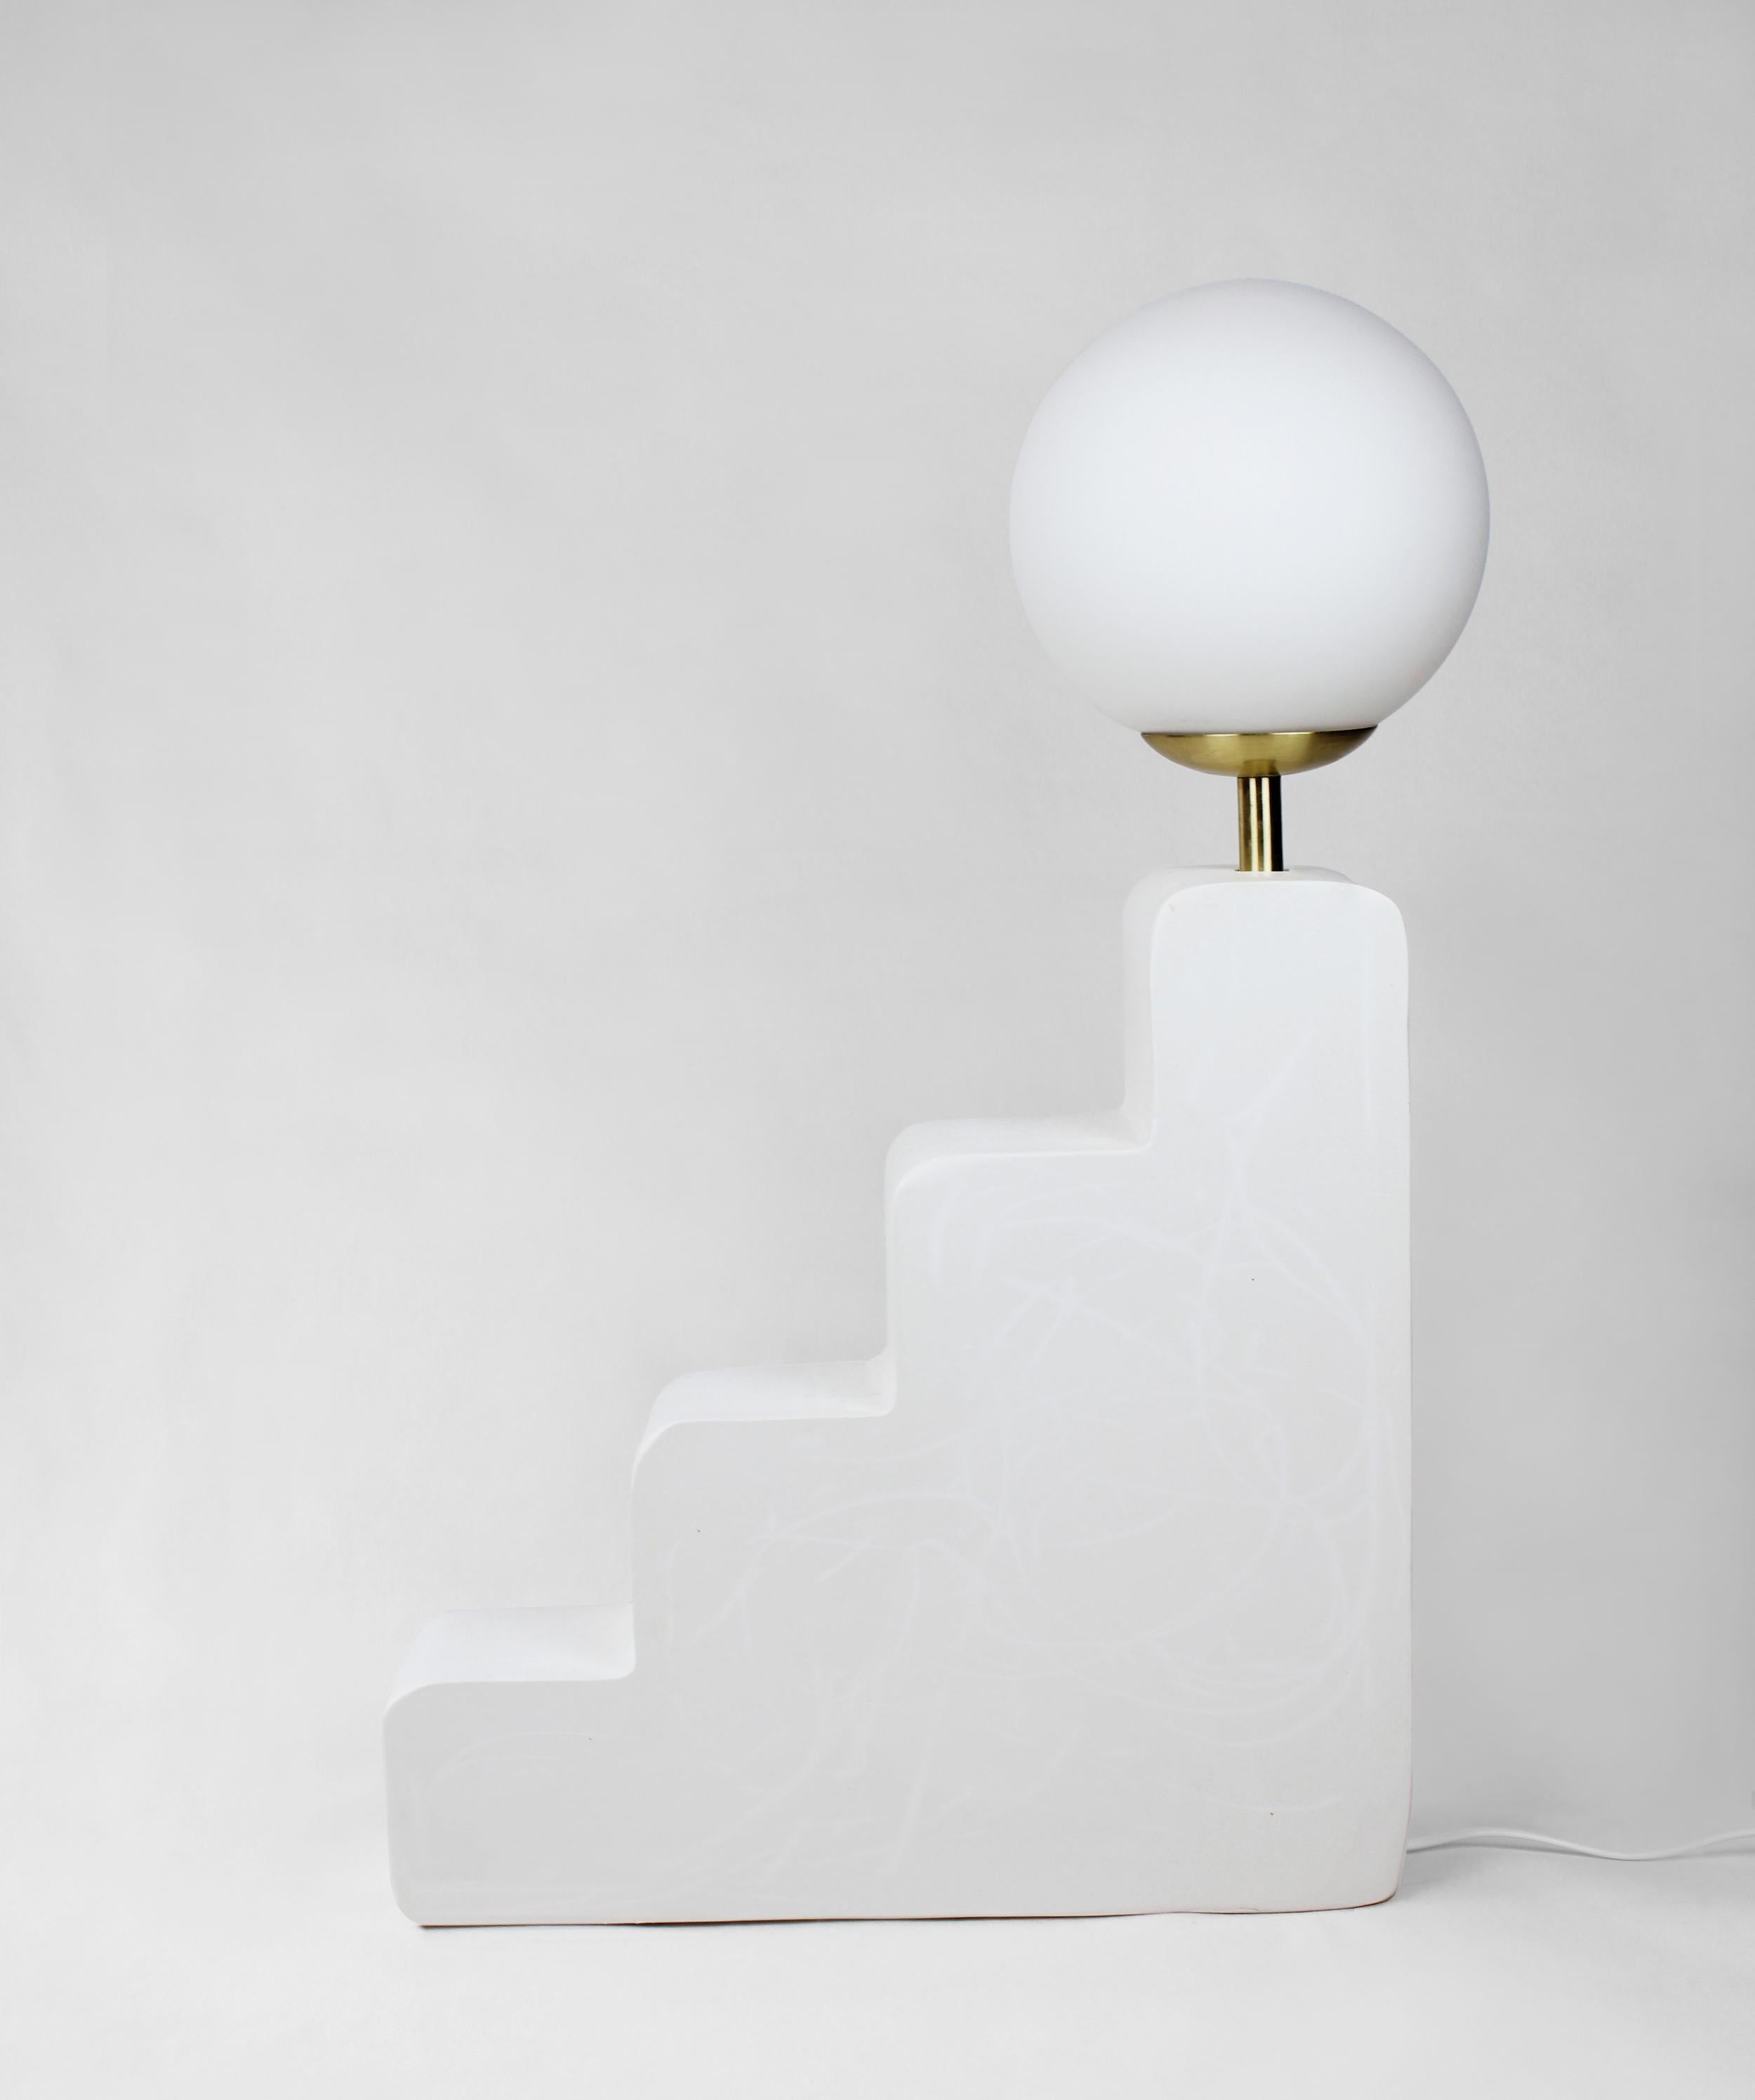 Kleine Stufenlampe von AOAO
Abmessungen: B 44 x T 11 x H 68 cm
MATERIALIEN: Weißer Gips
Farboptionen sind auf Anfrage erhältlich.

Die IDEA entstand, nachdem ich beschlossen hatte, mich mit meiner Familie und meinem Großvater - einem Bildhauer